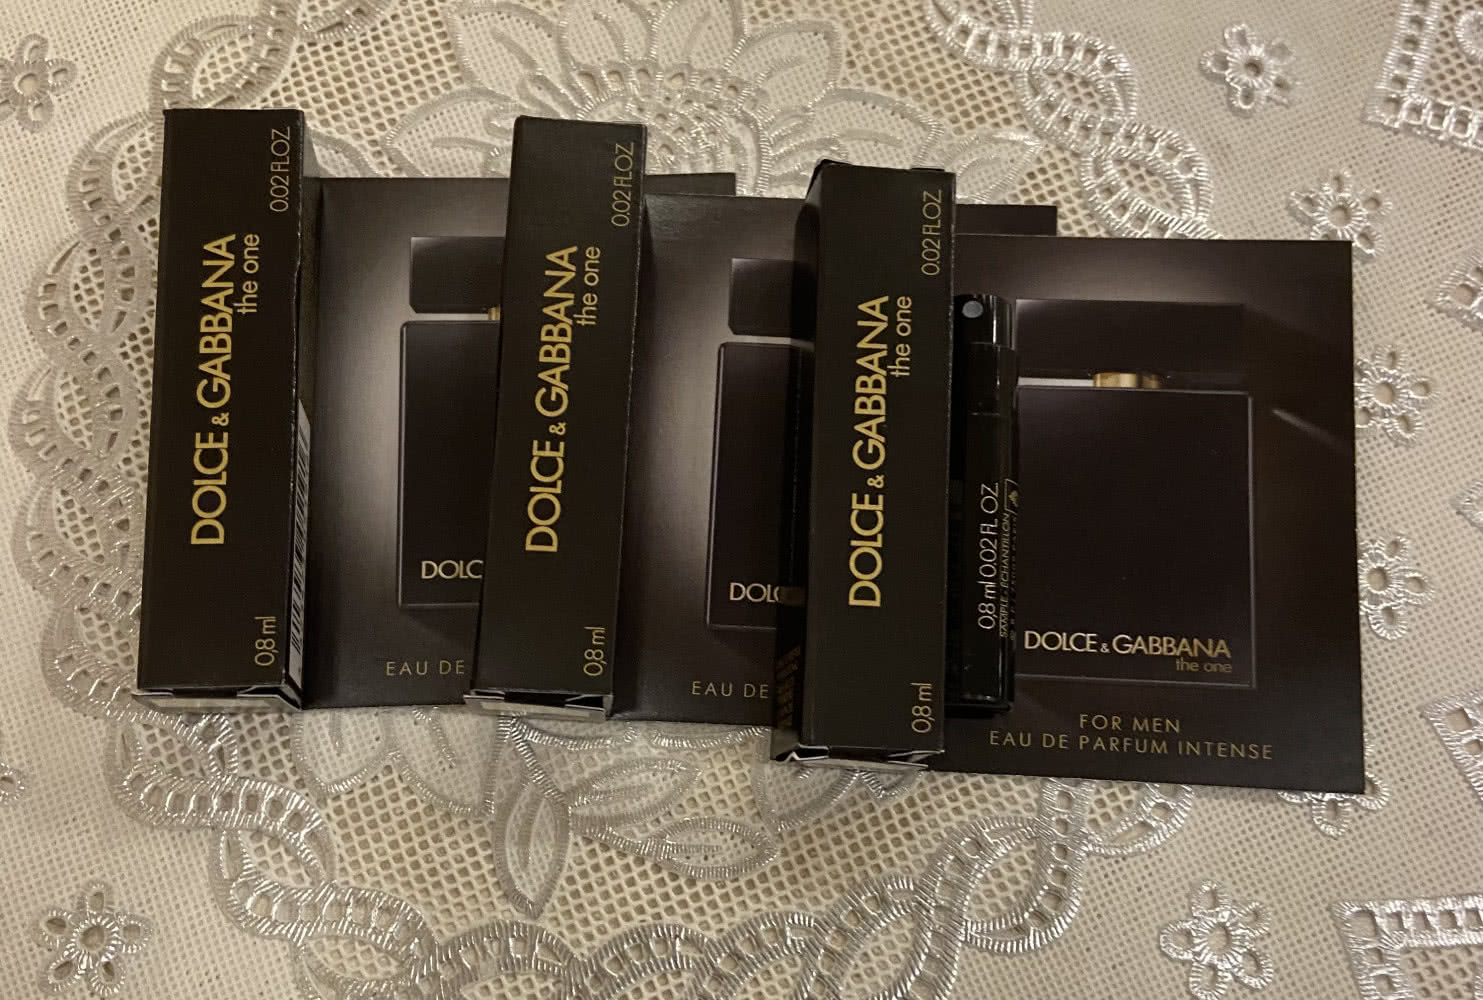 Dolce&Gabbana The one мужская парфюмерная вода -3шт*08мл